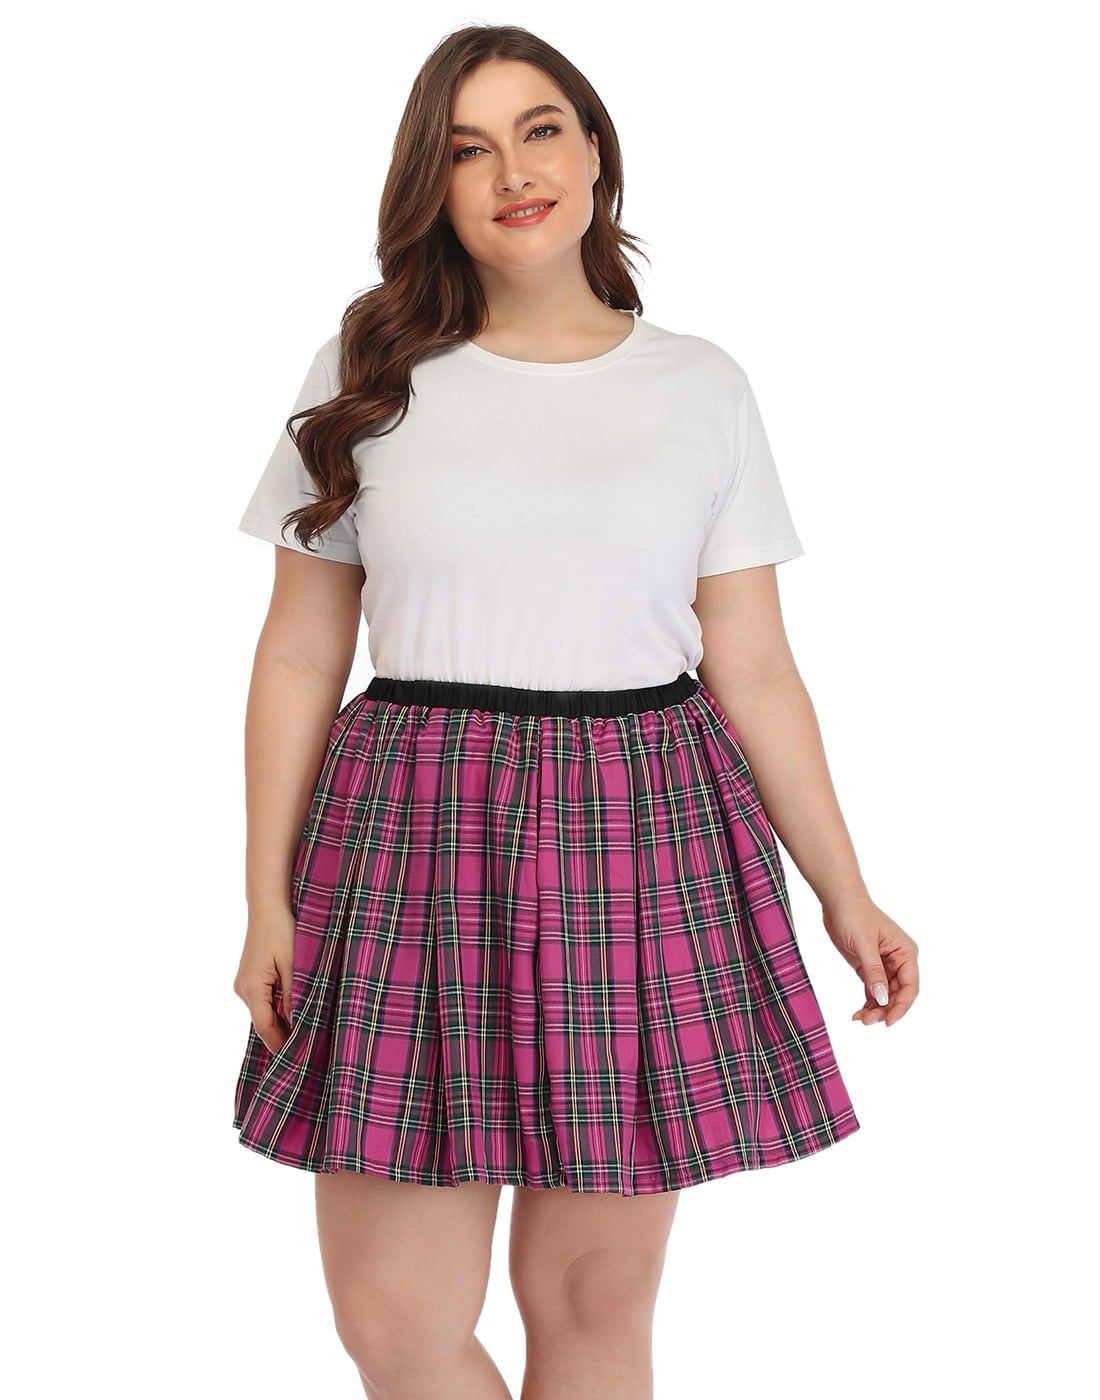 HDE Plus Size Plaid Skirt Lingerie 